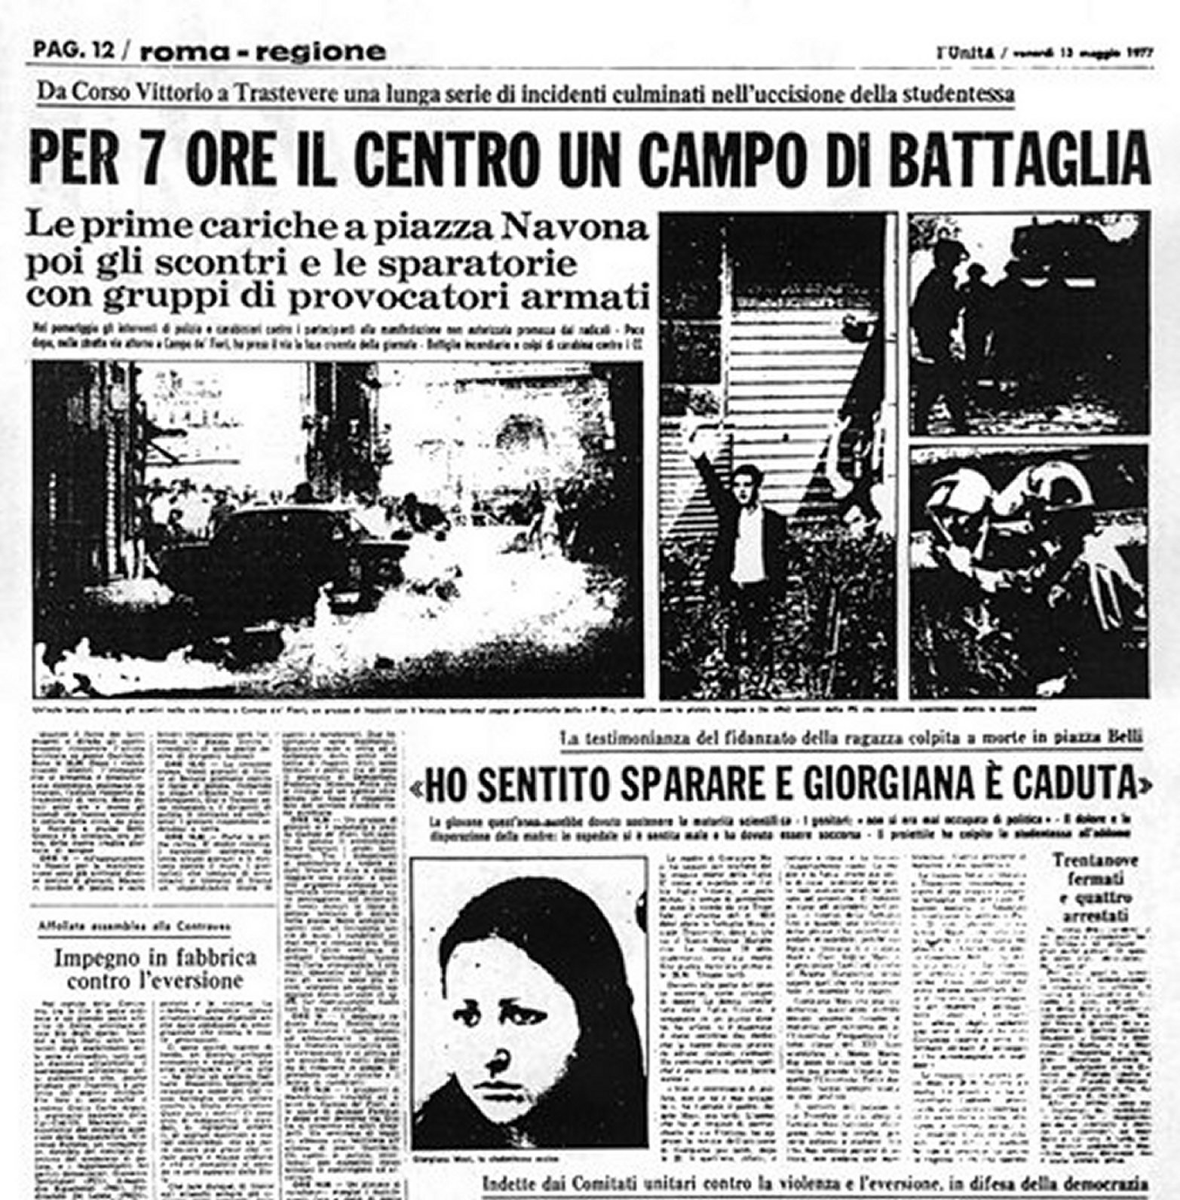 El 12 de mayo de 1977 la izquierda extraparlamentaria se concentraba en el centro de Roma desafiando la prohibición de manifestarse. El gobierno envió 5.000 agentes a reprimirles, que acabaron disparando contra los manifestantes. Giorgiana Masi, de 19 años, murió víctima de un…